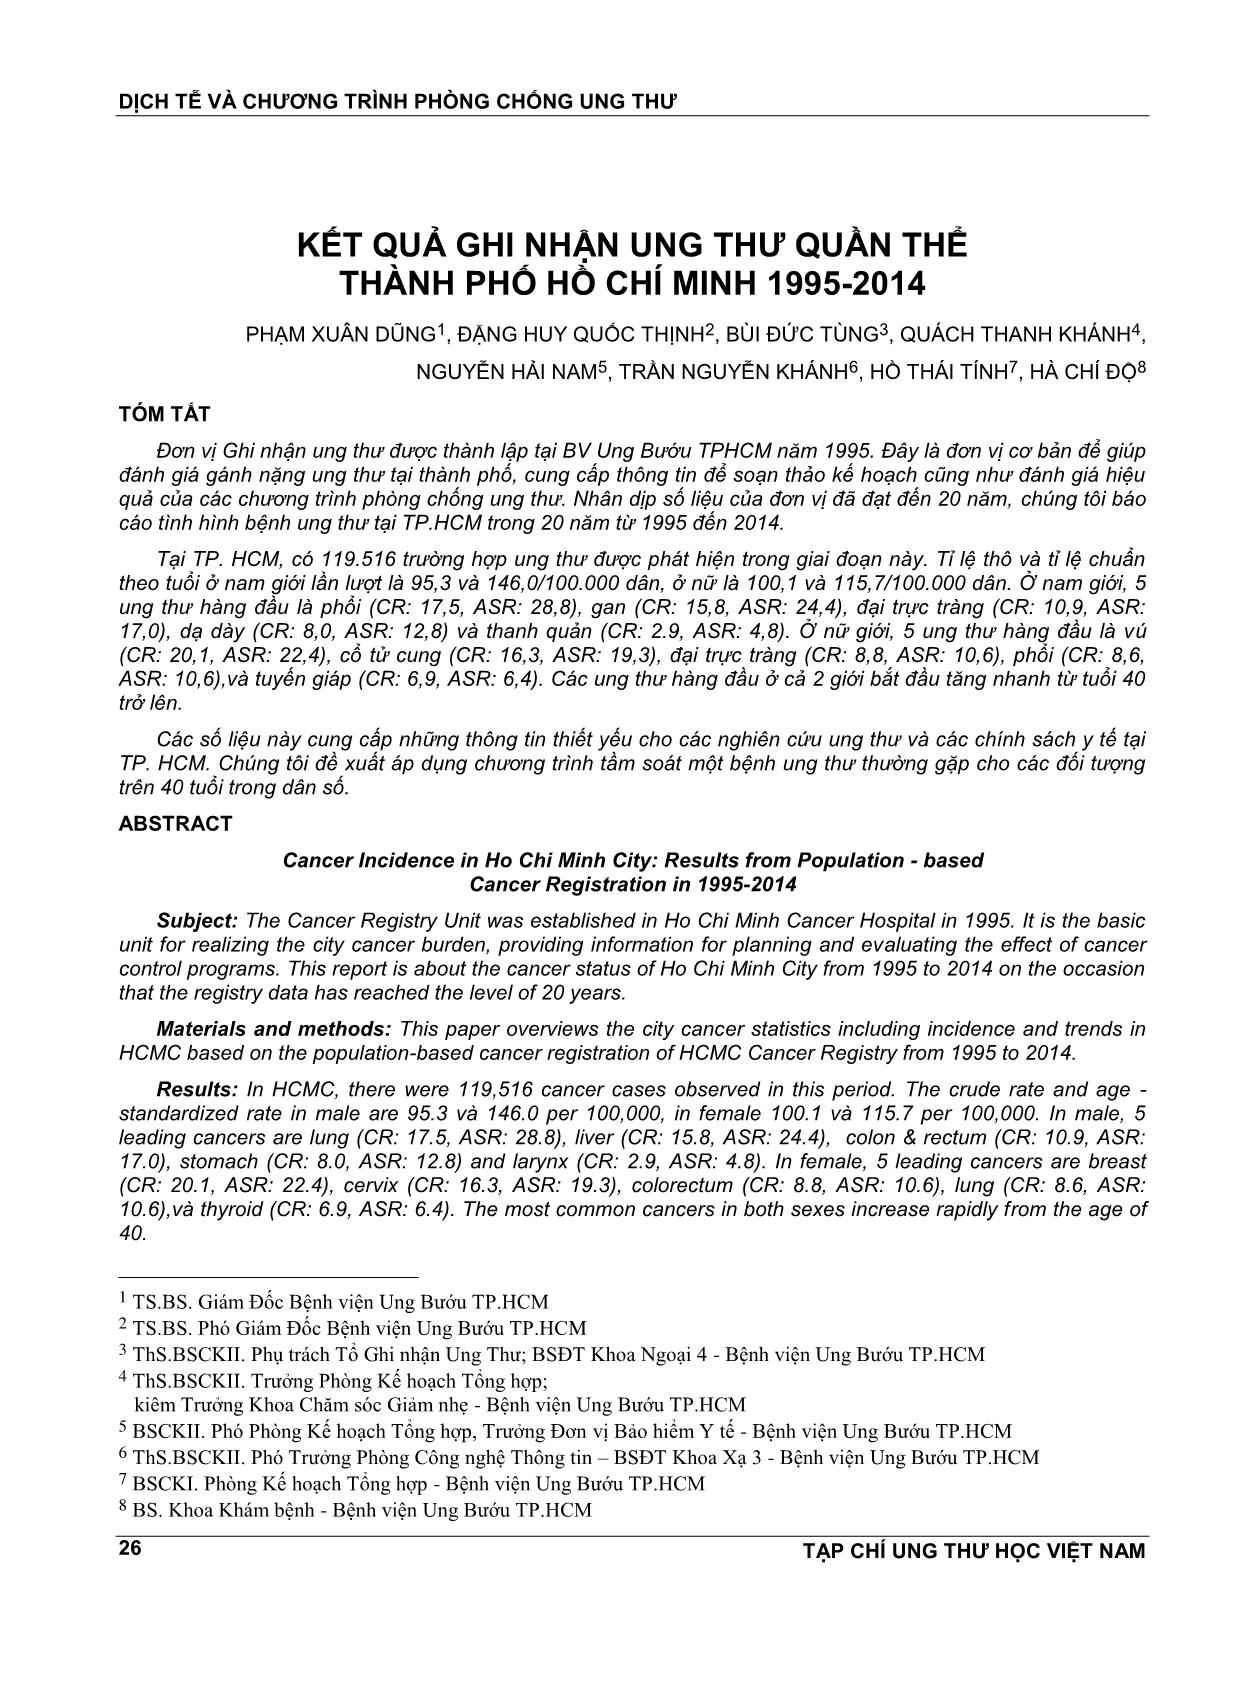 Kết quả ghi nhận ung thư quần thể thành phố Hồ Chí Minh 1995 - 2014 trang 1